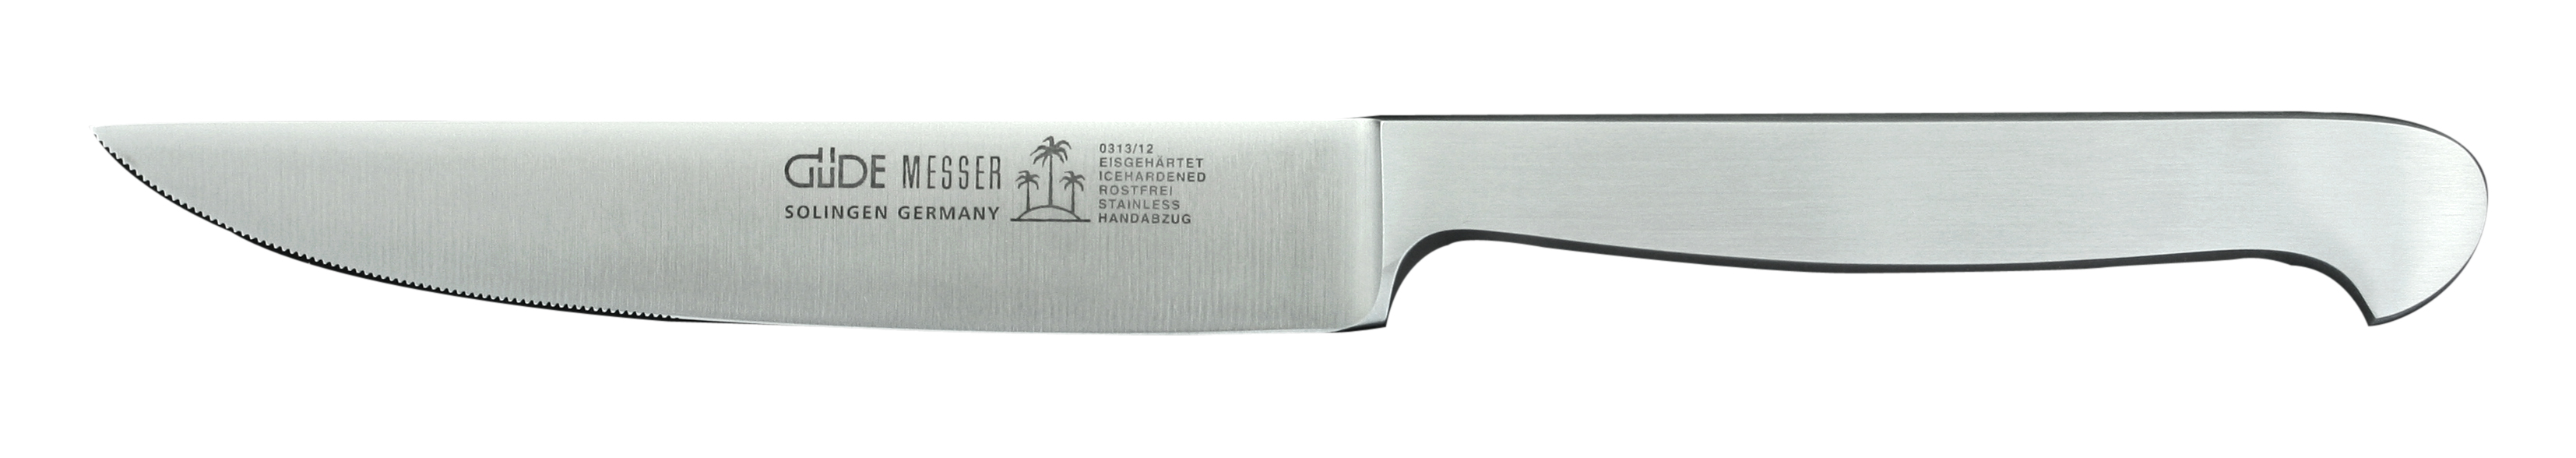 Güde Kappa Steakmesser 12 cm - Klinge und Griff aus CVM-Stahl